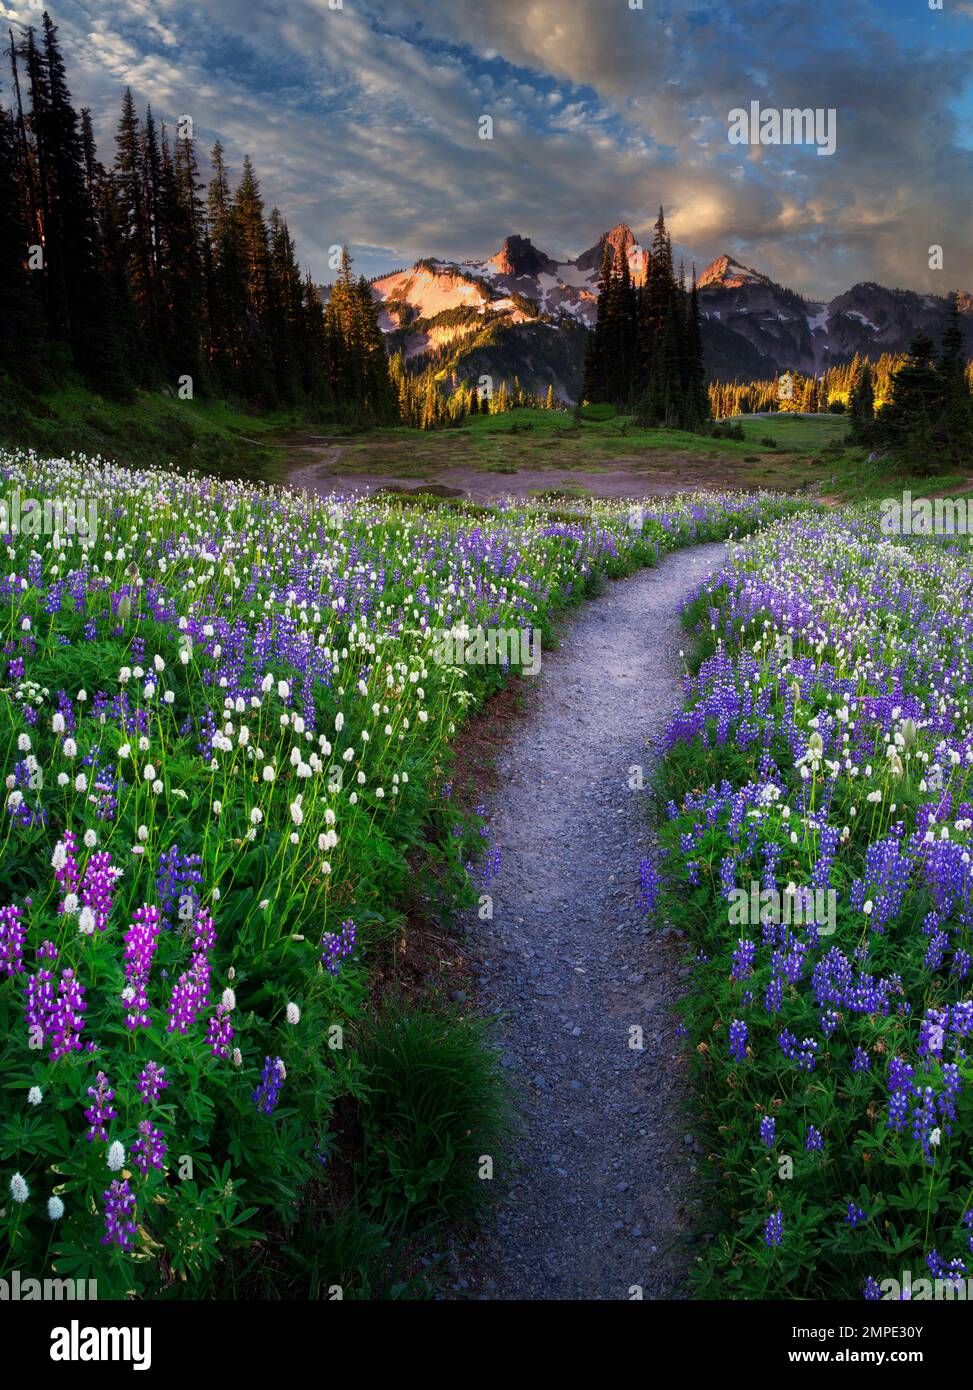 Fleurs sauvages, chemin et montagnes. Tatoosh Mt Rainier National Park, Washington Banque D'Images